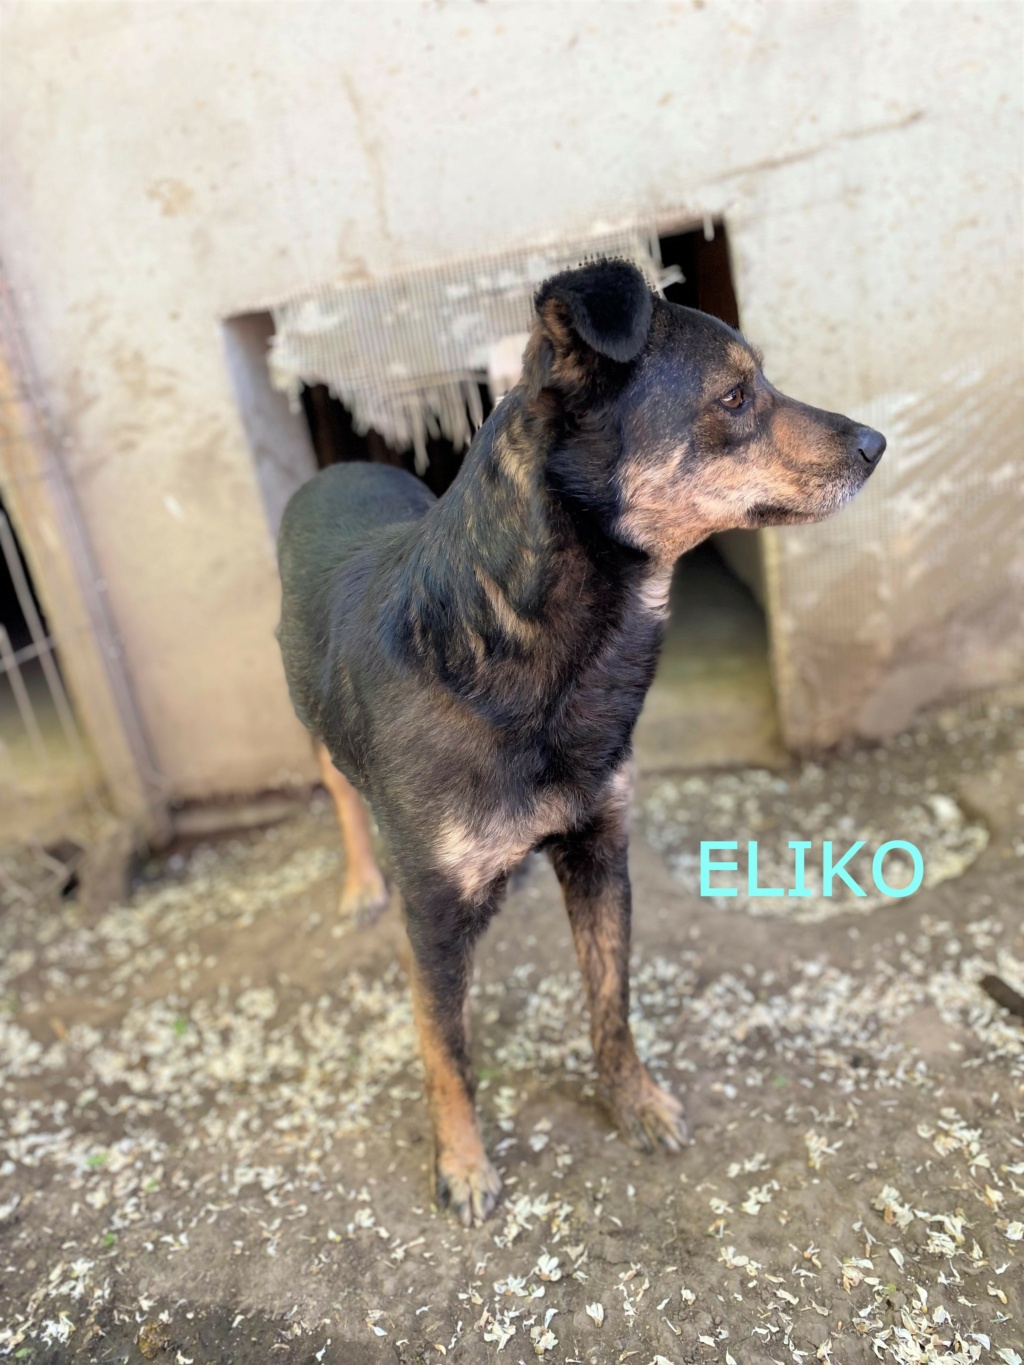 eliko - Éliko, né en 2018, sorti de l'équarrissage le 30/04/2021 - parrainé par Maïlys C. -R-SC Eliko_11